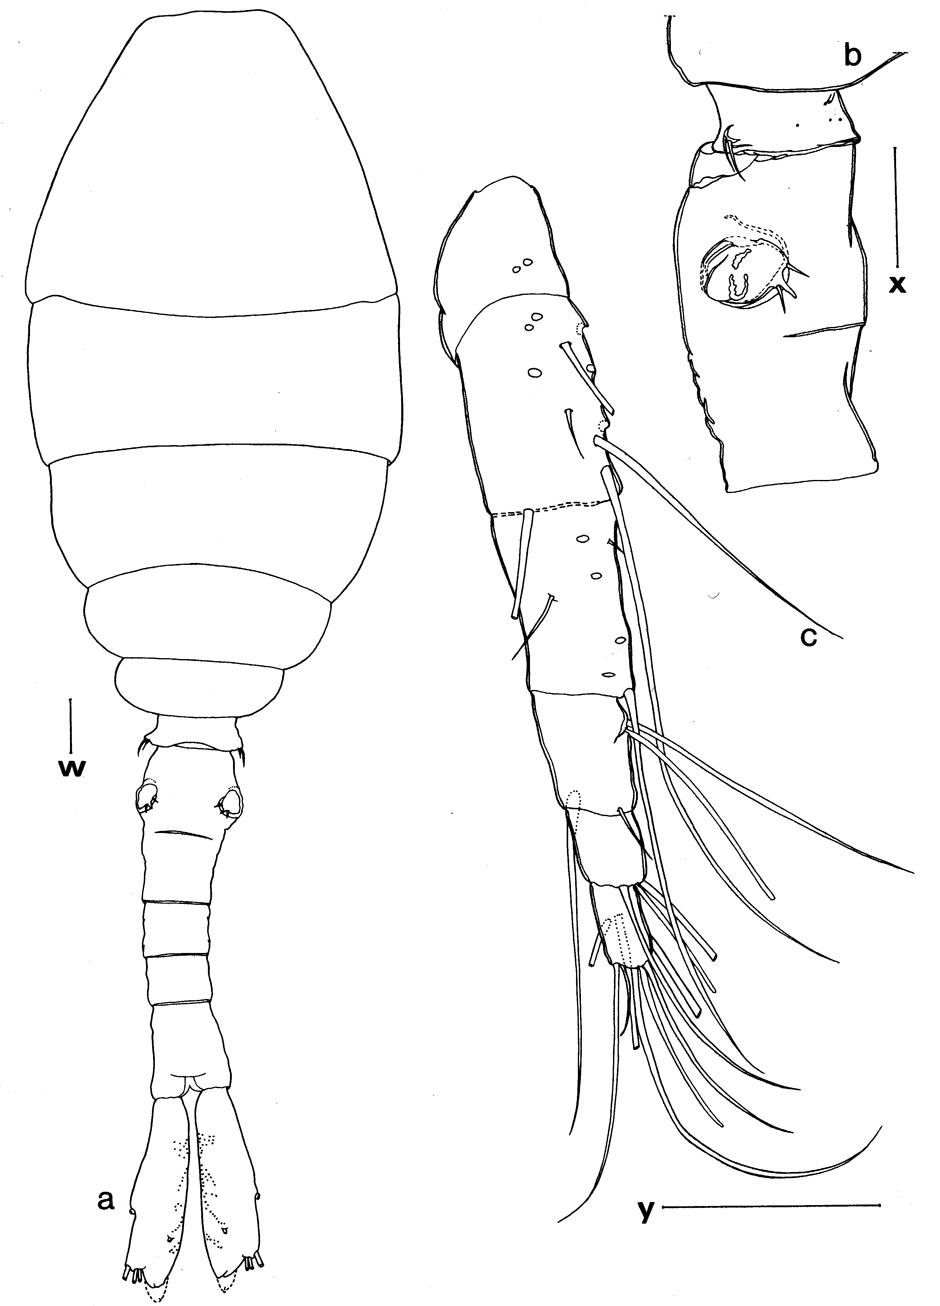 Espce Urocopia singularis - Planche 1 de figures morphologiques